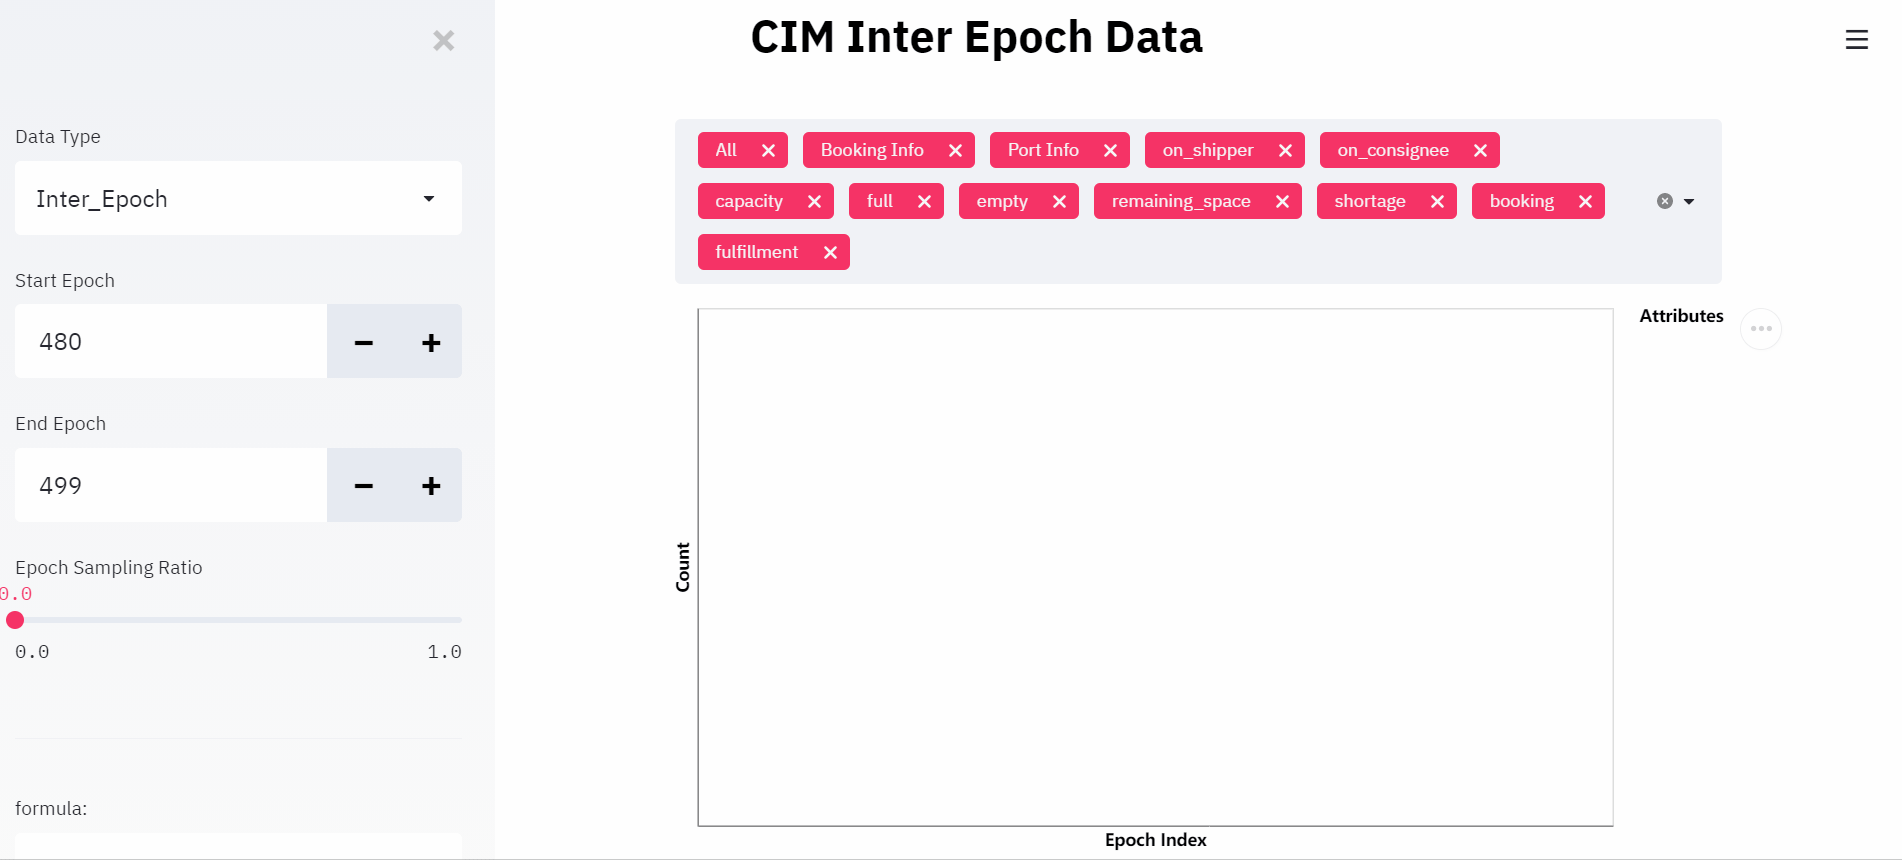 CIM Inter Epoch